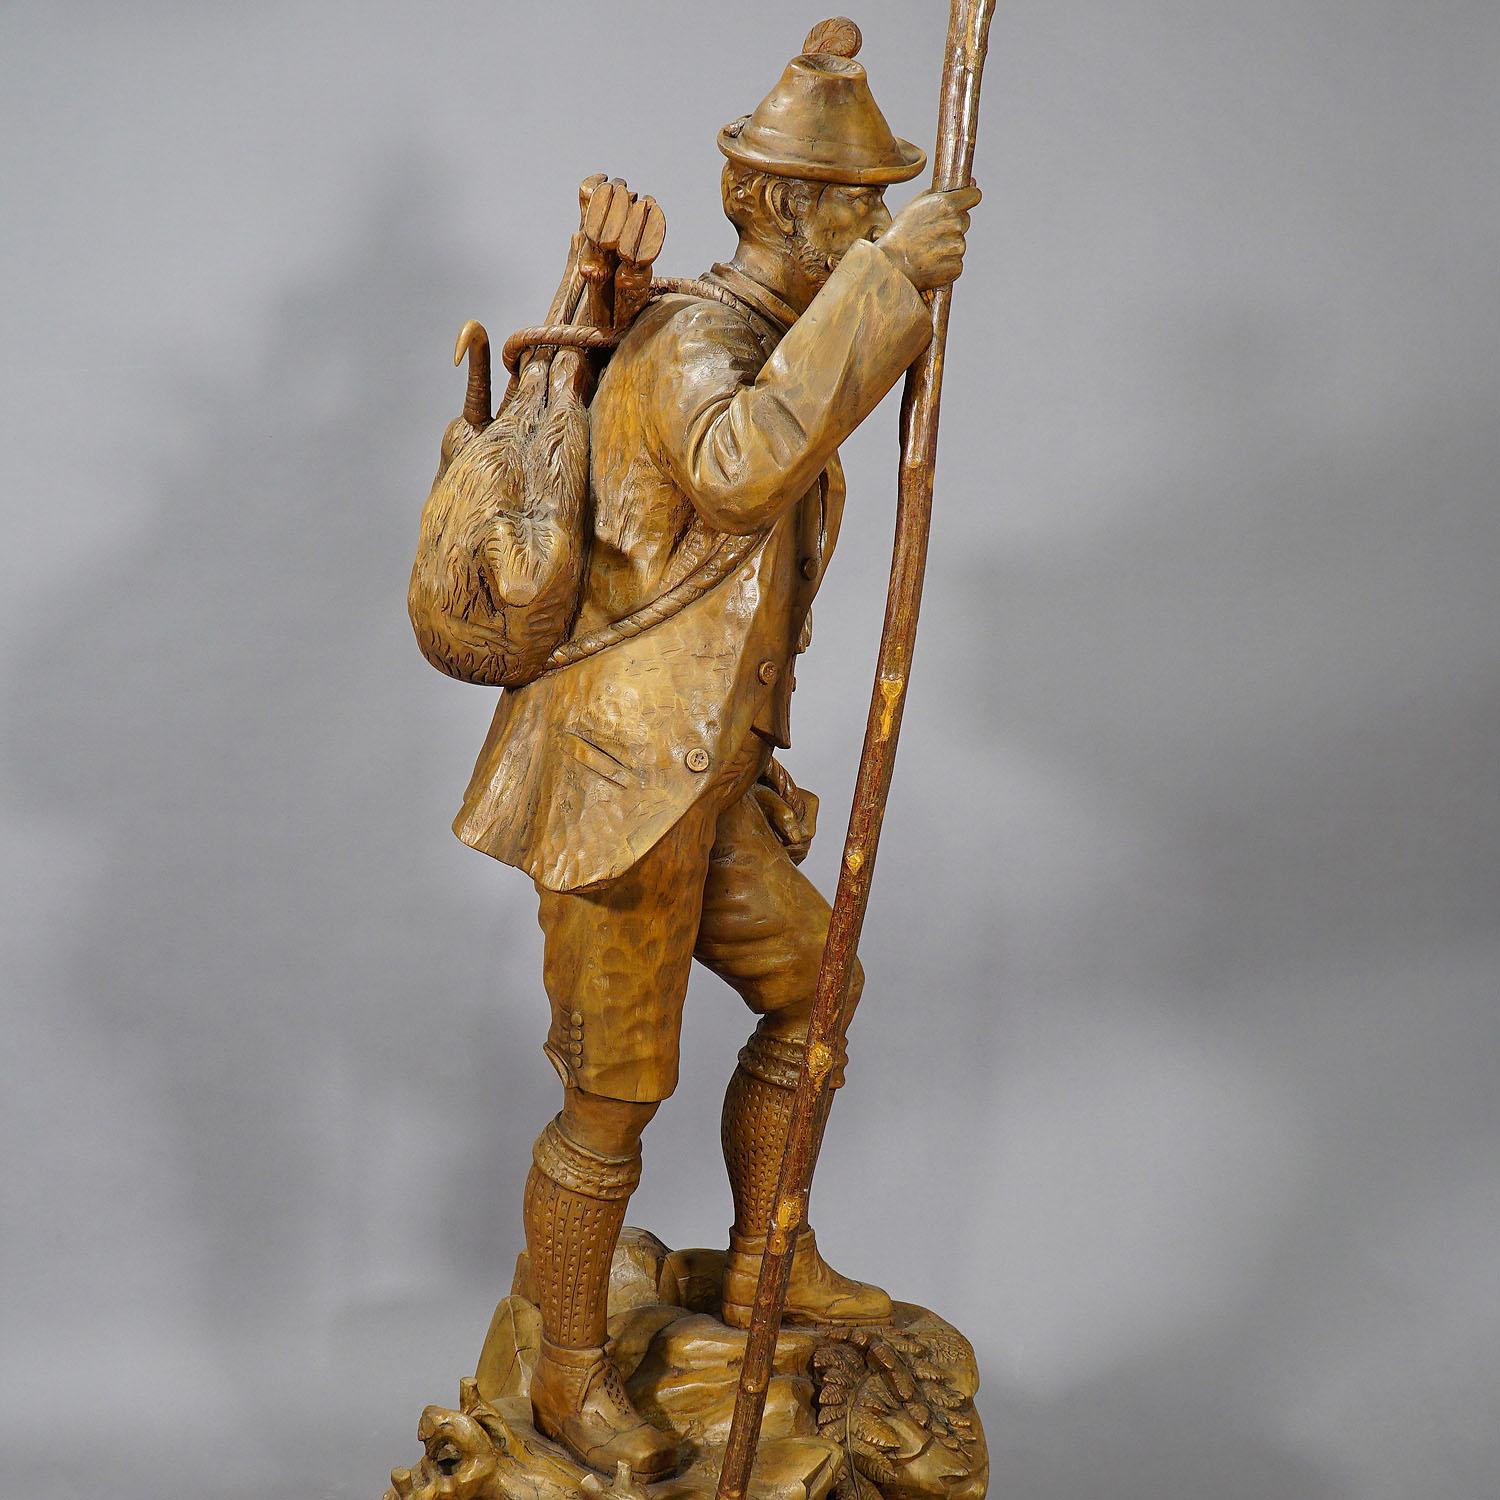 Eine sehr große handgeschnitzte Wilderer-Statue aus Holz. Der Wilderer ist auf dem Rückweg von der Jagd mit einer erlegten Gämse auf dem Rücken. Die handgefertigte Skulptur wurde um 1900 in der Gegend von Brienz, Schweiz, ausgeführt.
Maße: Breite